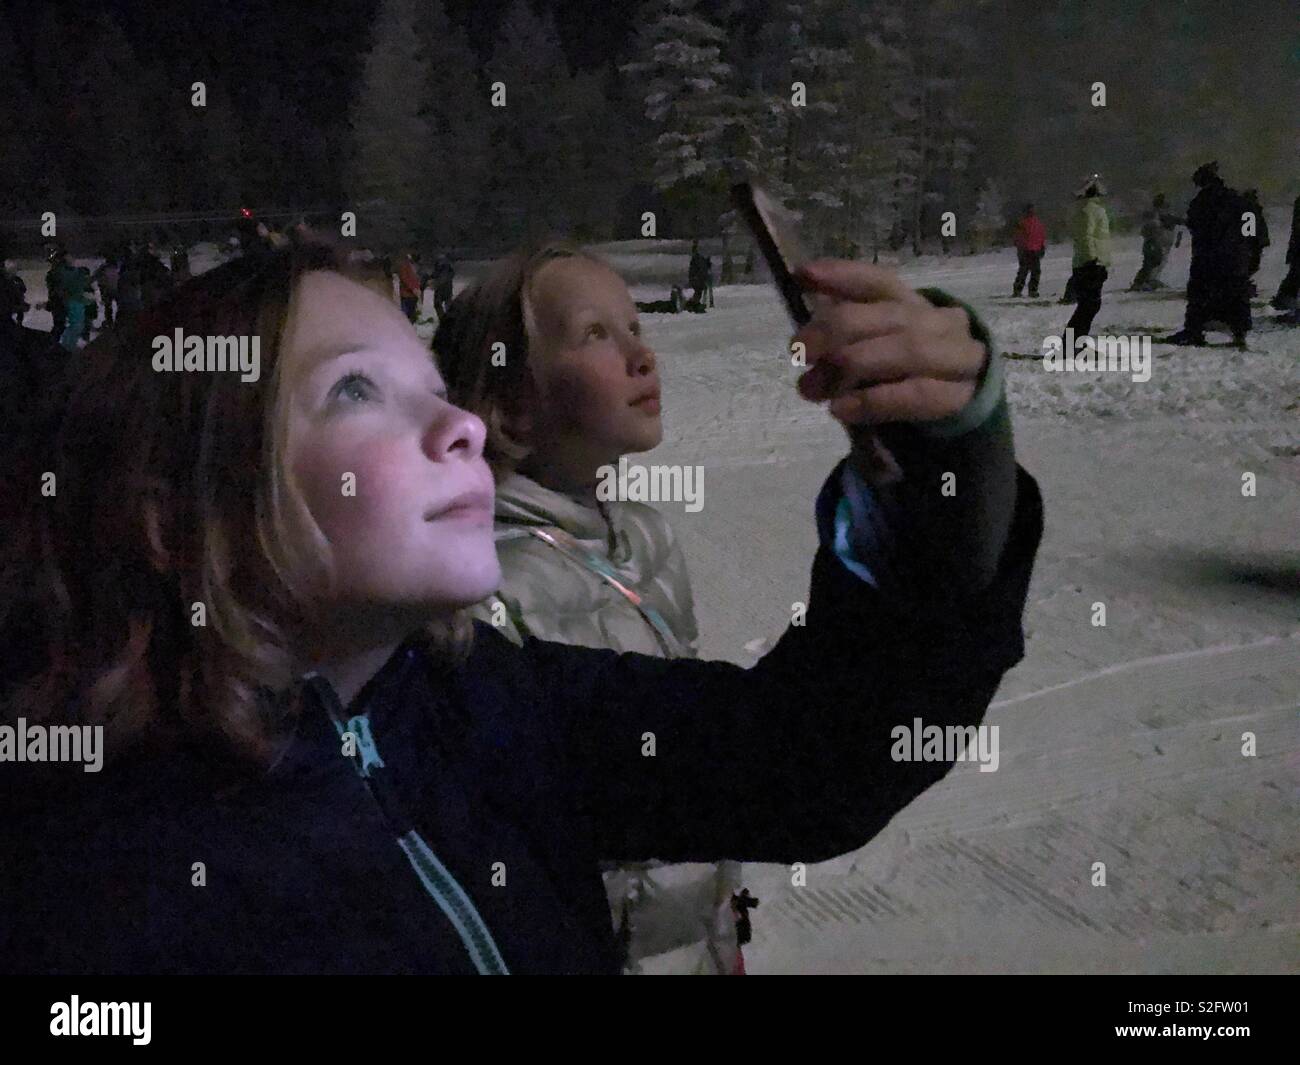 Zwei Mädchen sehen Sie eine nächtliche Licht Show auf einem Ski Hill. Man Datensätze mit Ihrem Smartphone und wird durch das Display beleuchtet. Stockfoto